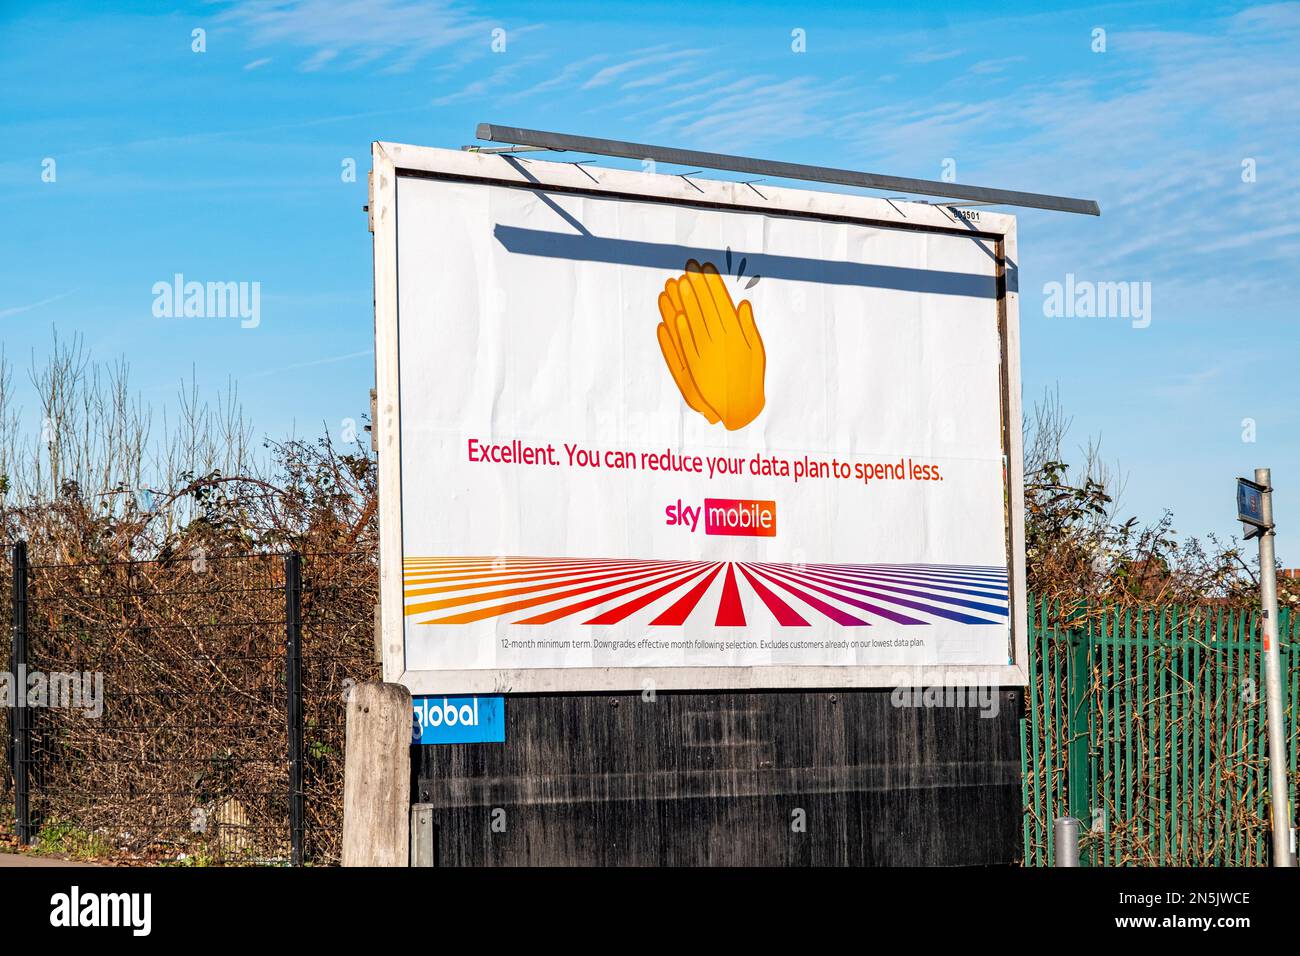 Sky Mobile advert on billboard UK Stock Photo